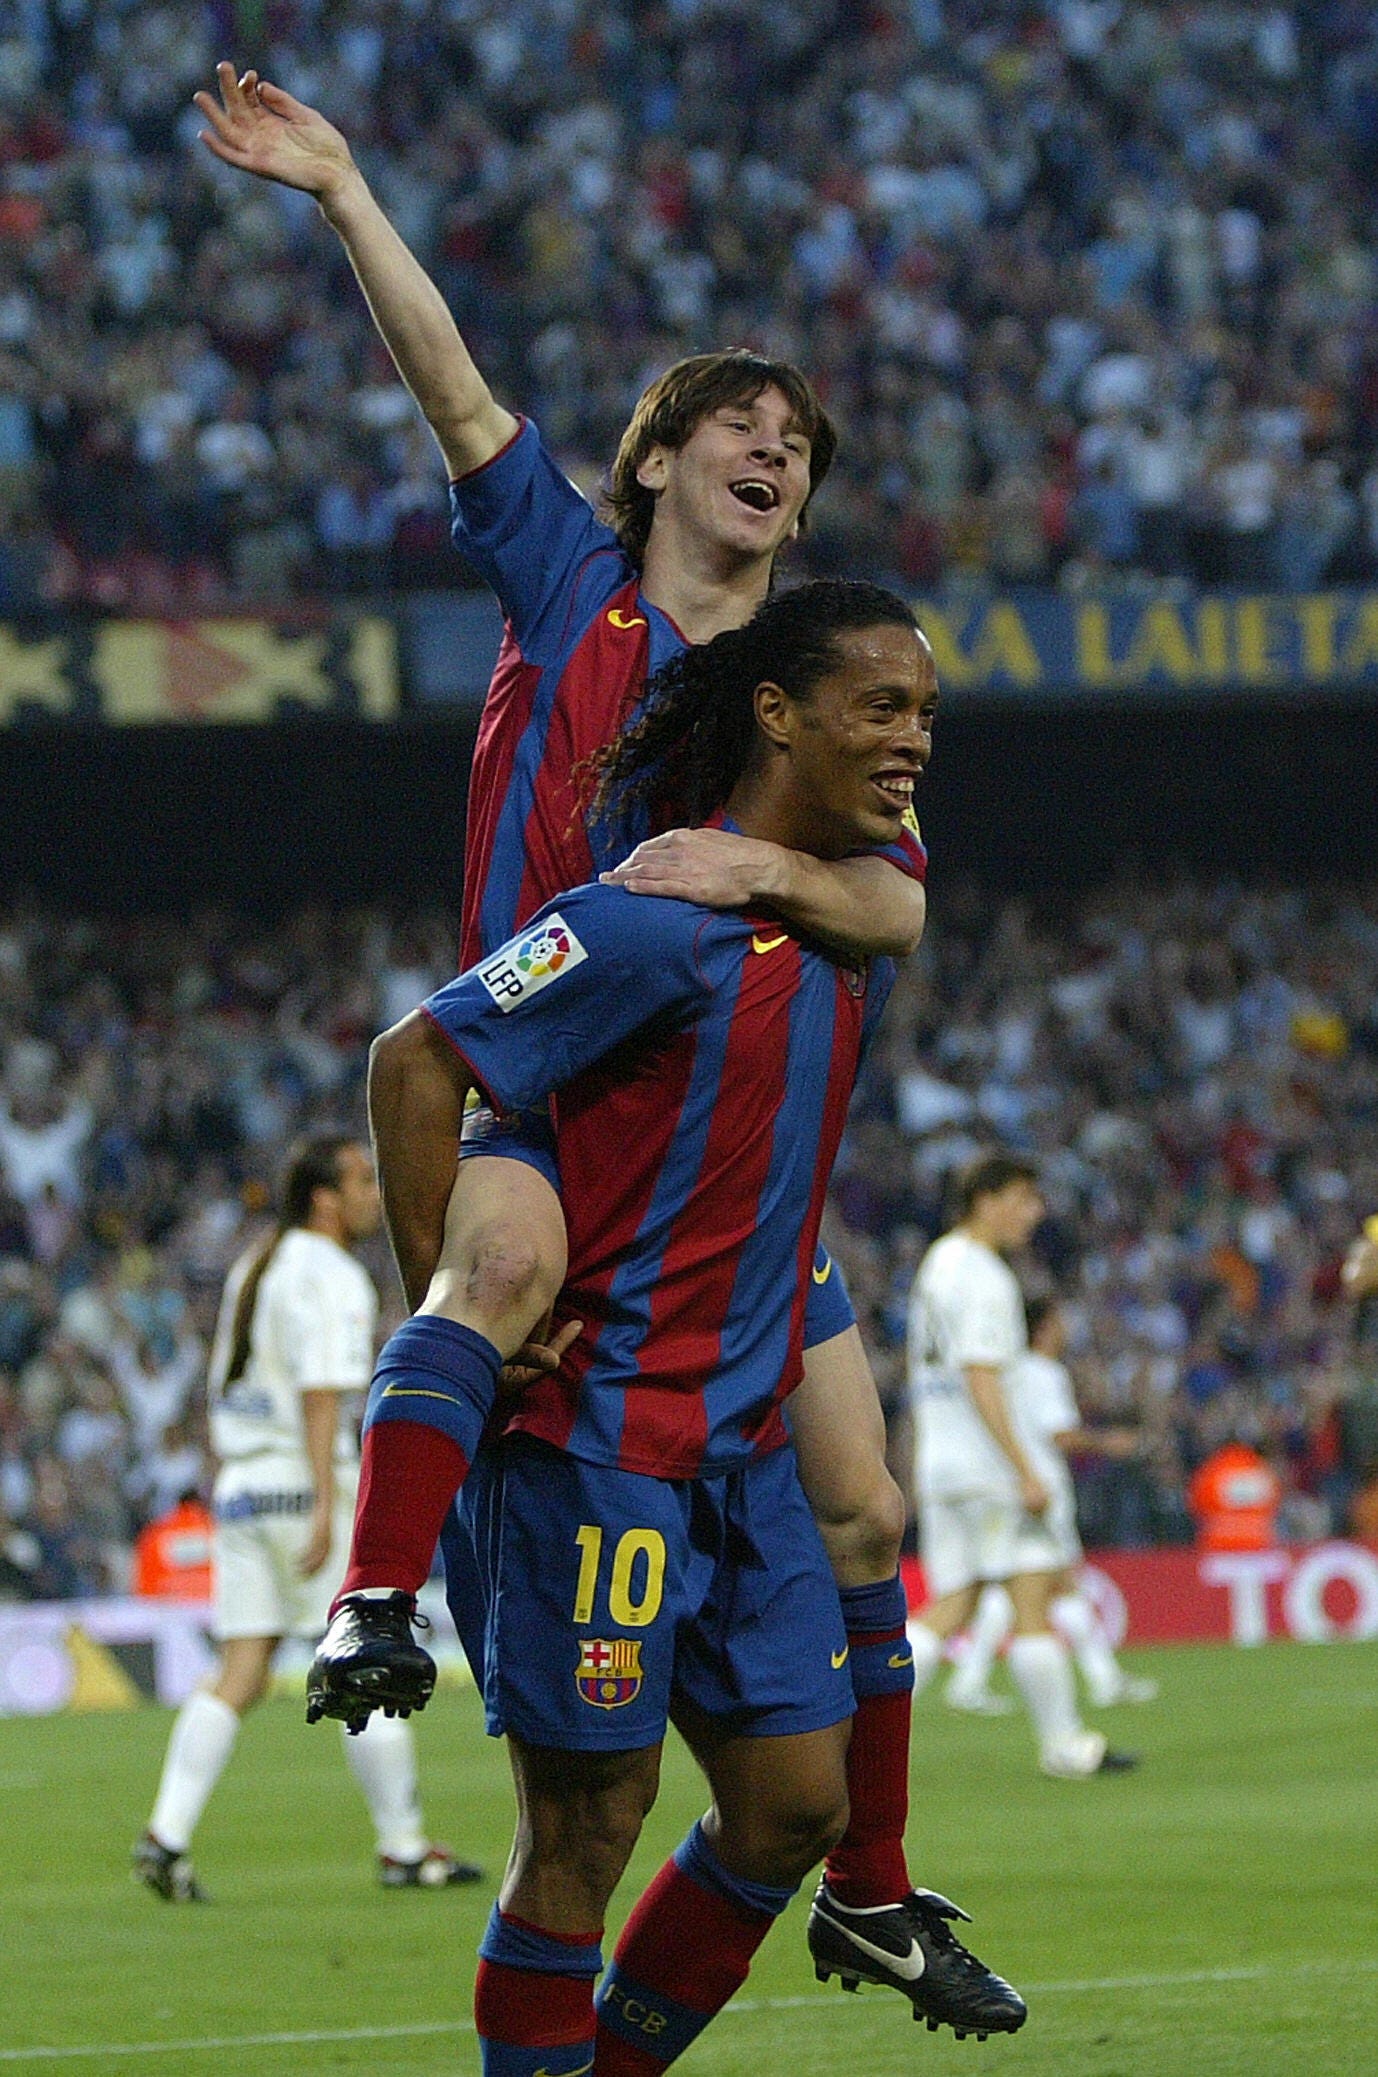 Sự kết hợp của hai siêu sao với nhau cho ra những khoảnh khắc đẹp nhất của bóng đá. Ronaldinho và Messi là một pha hợp tác đẳng cấp, và những hình ảnh của họ sẽ khiến cho bạn trầm trồ và ngưỡng mộ.